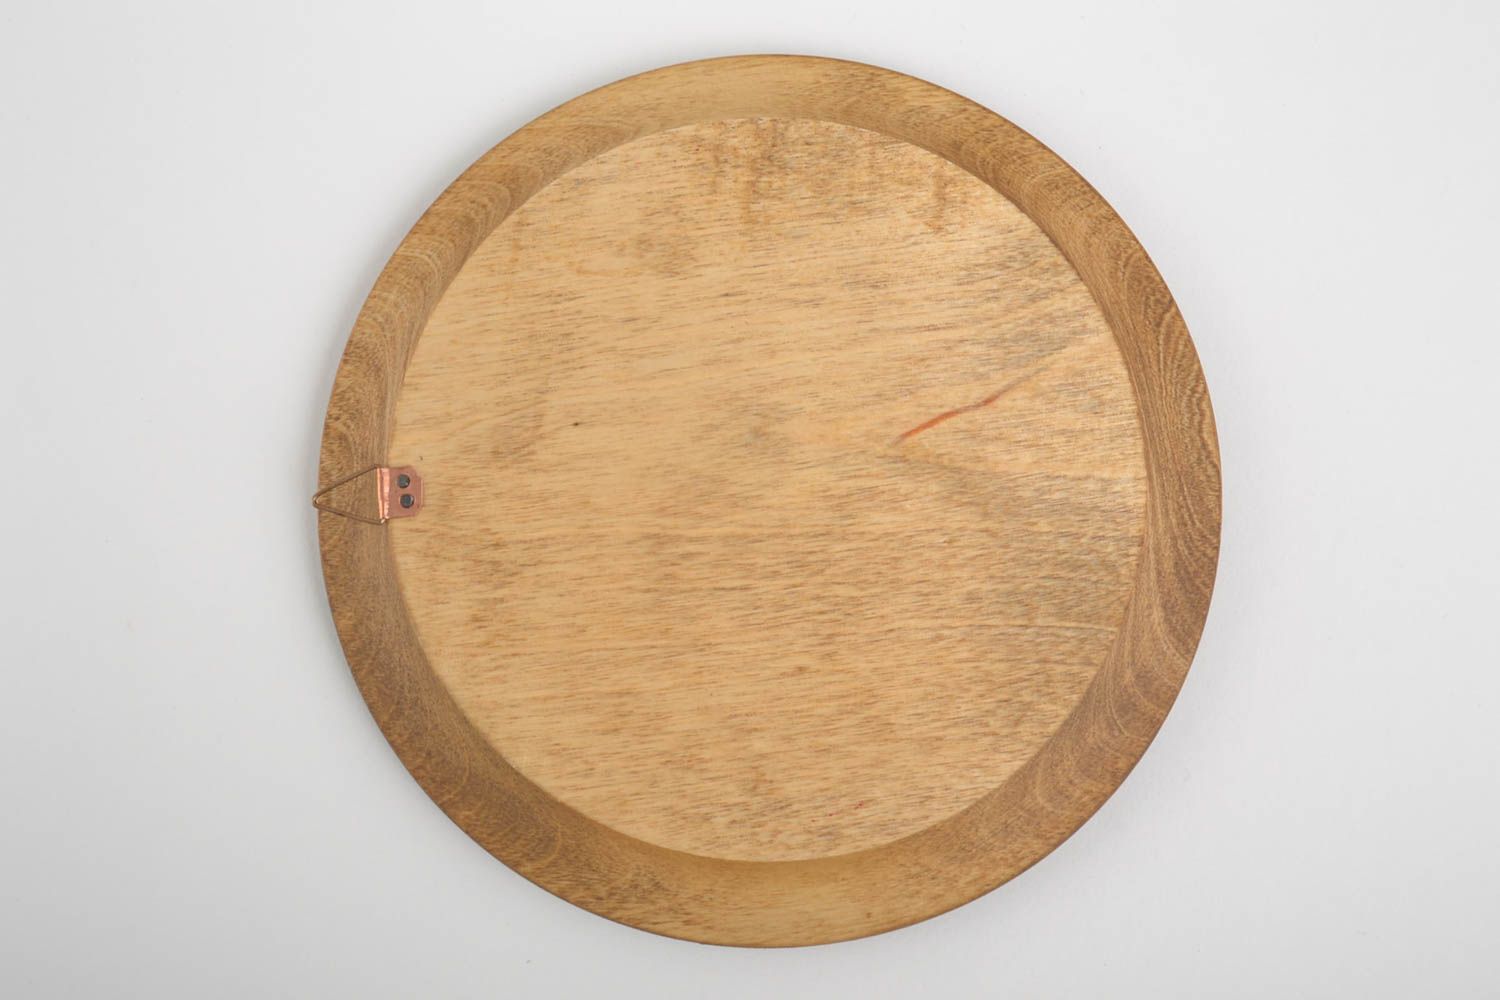 Тарелка настенная декоративная ручной работы красивая тарелка посуда из дерева  фото 3